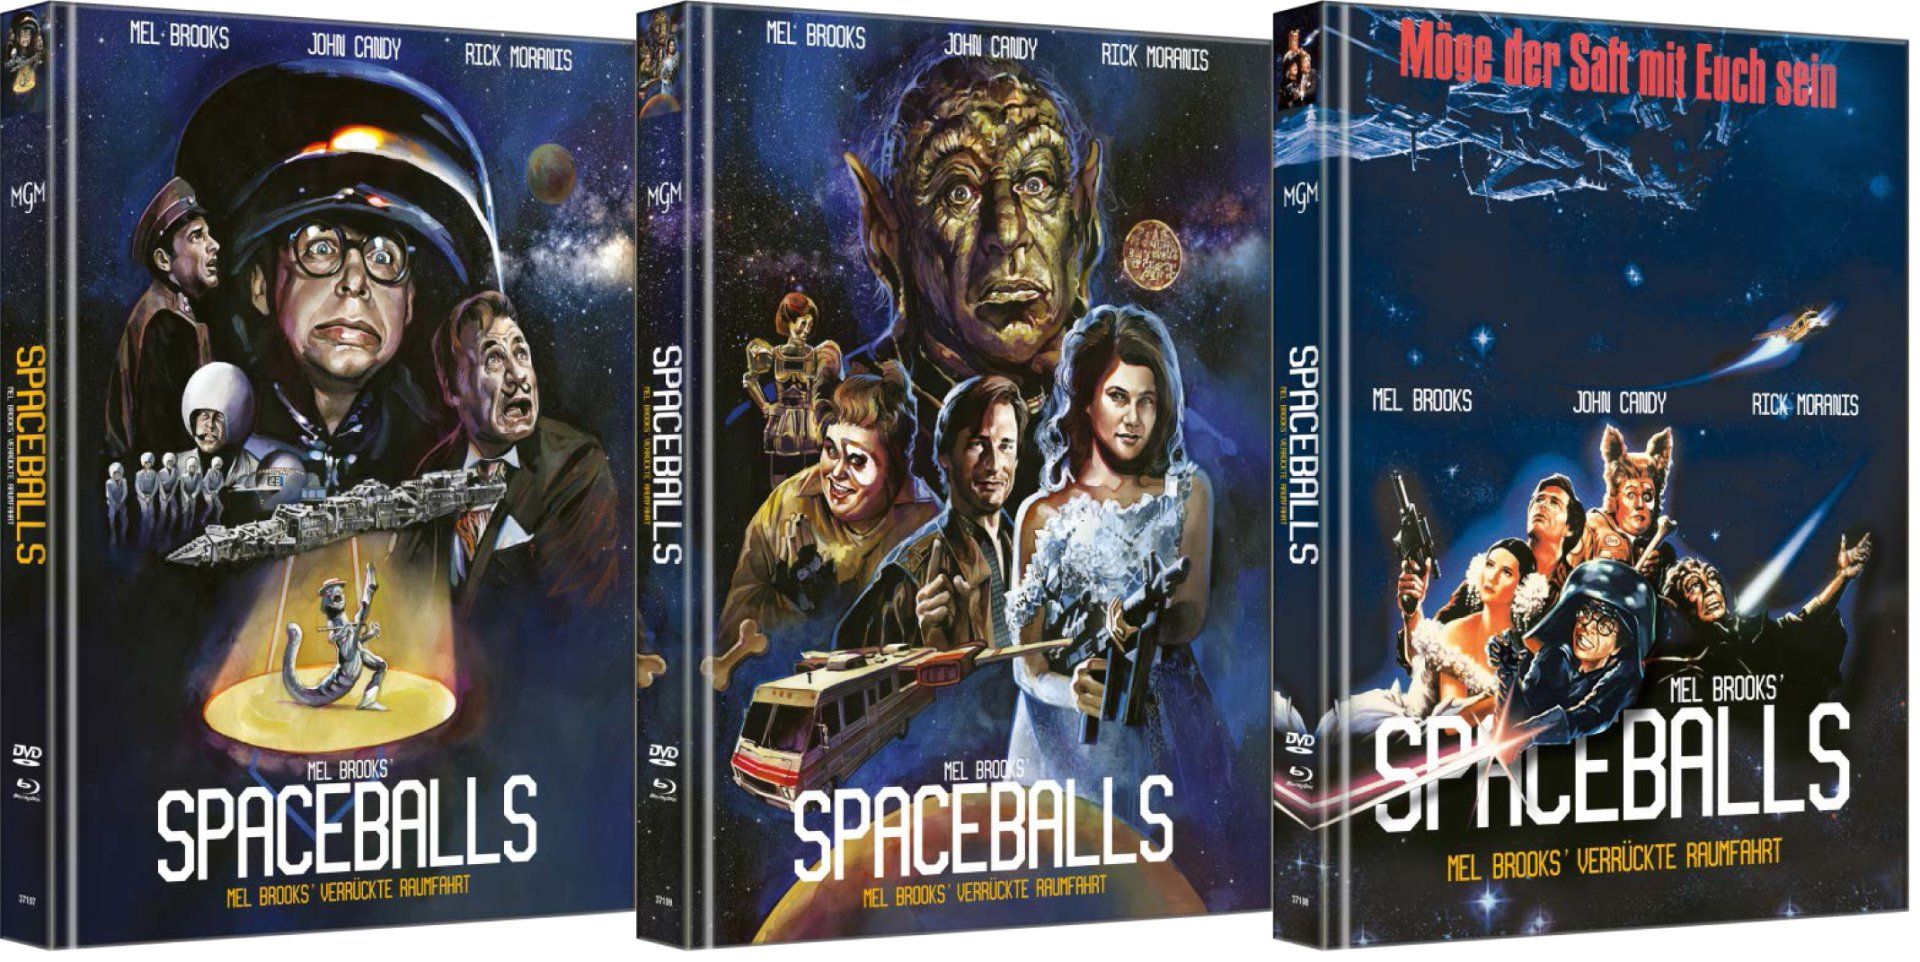 MediaBook Spaceballs - DVD & Blu ray